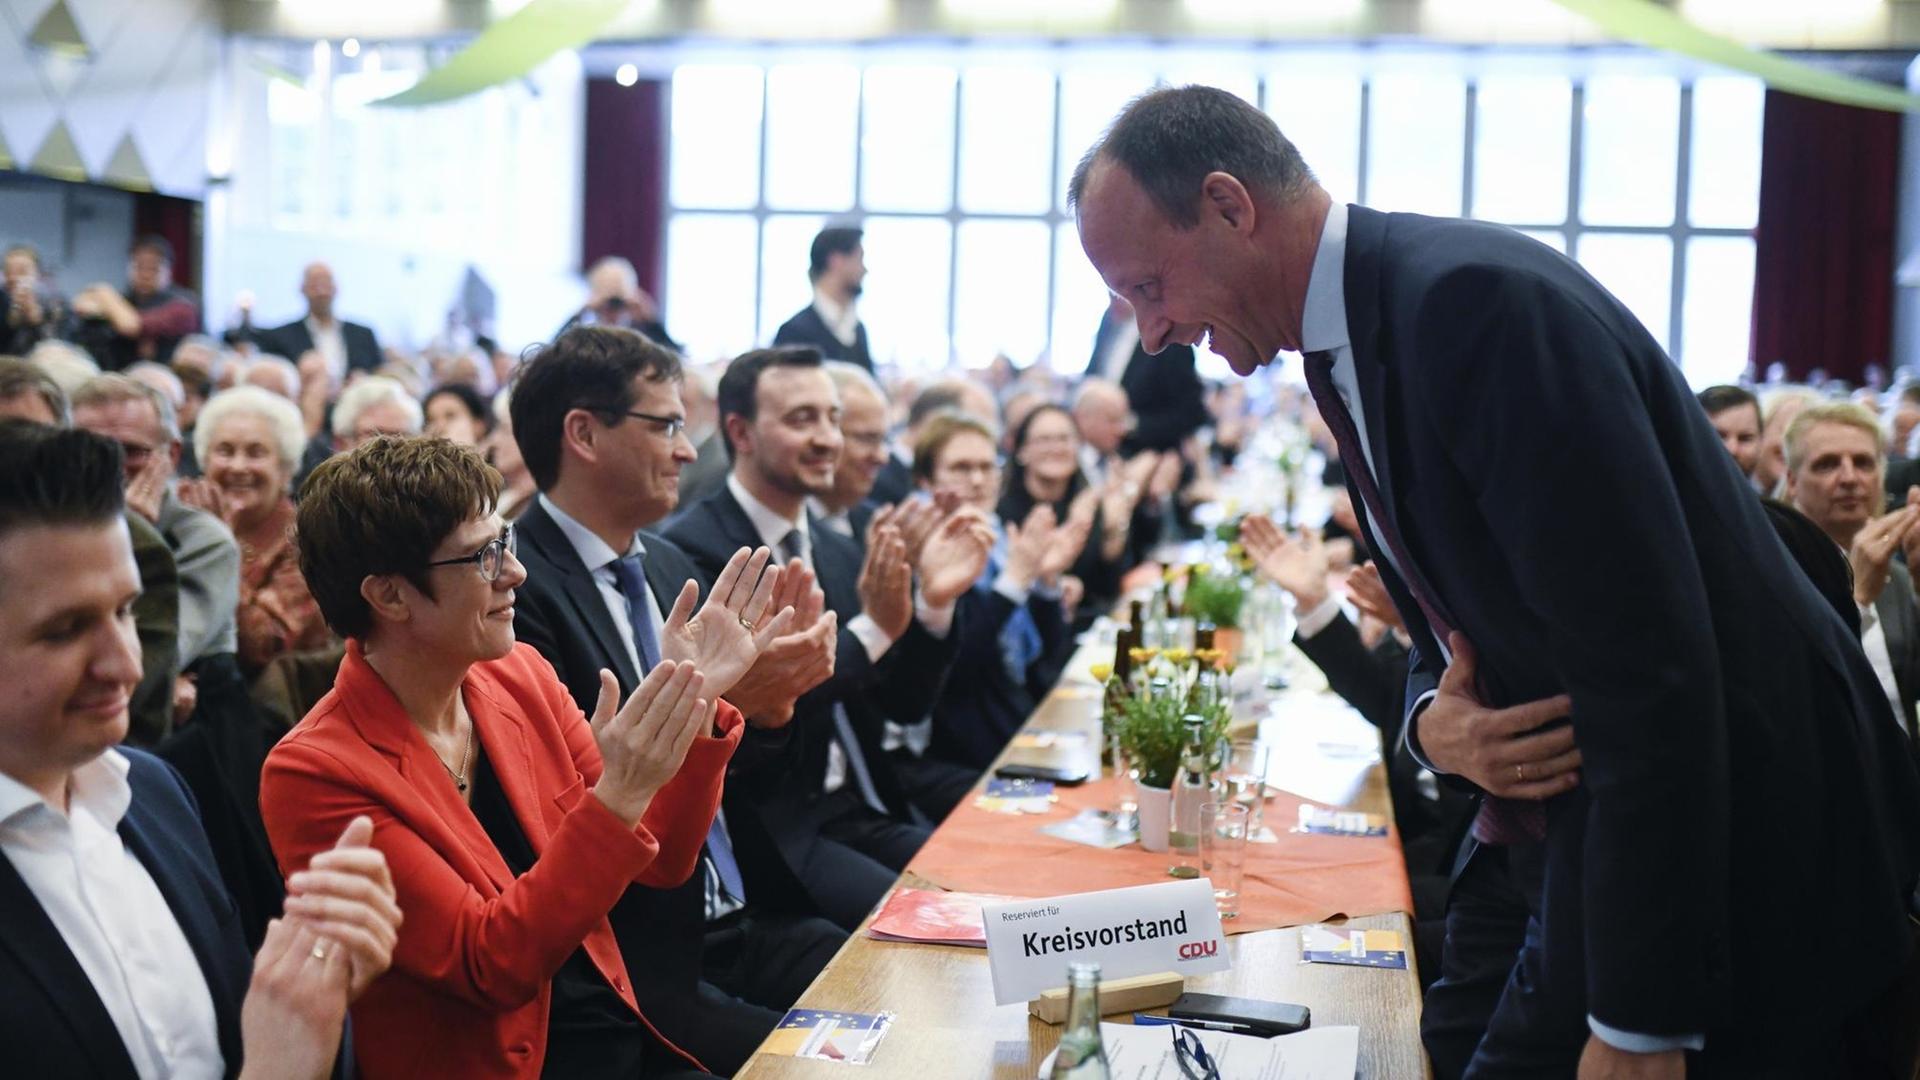 CDU Europawahlkampf in Eslohe: CDU-Chefin Annegret Kramp-Karrenbauer (l) und ihr Ex-Kontrahent Friedrich Merz nehmen an einer Europawahlkampf-Veranstaltung der CDU am 12.04.2019 teil